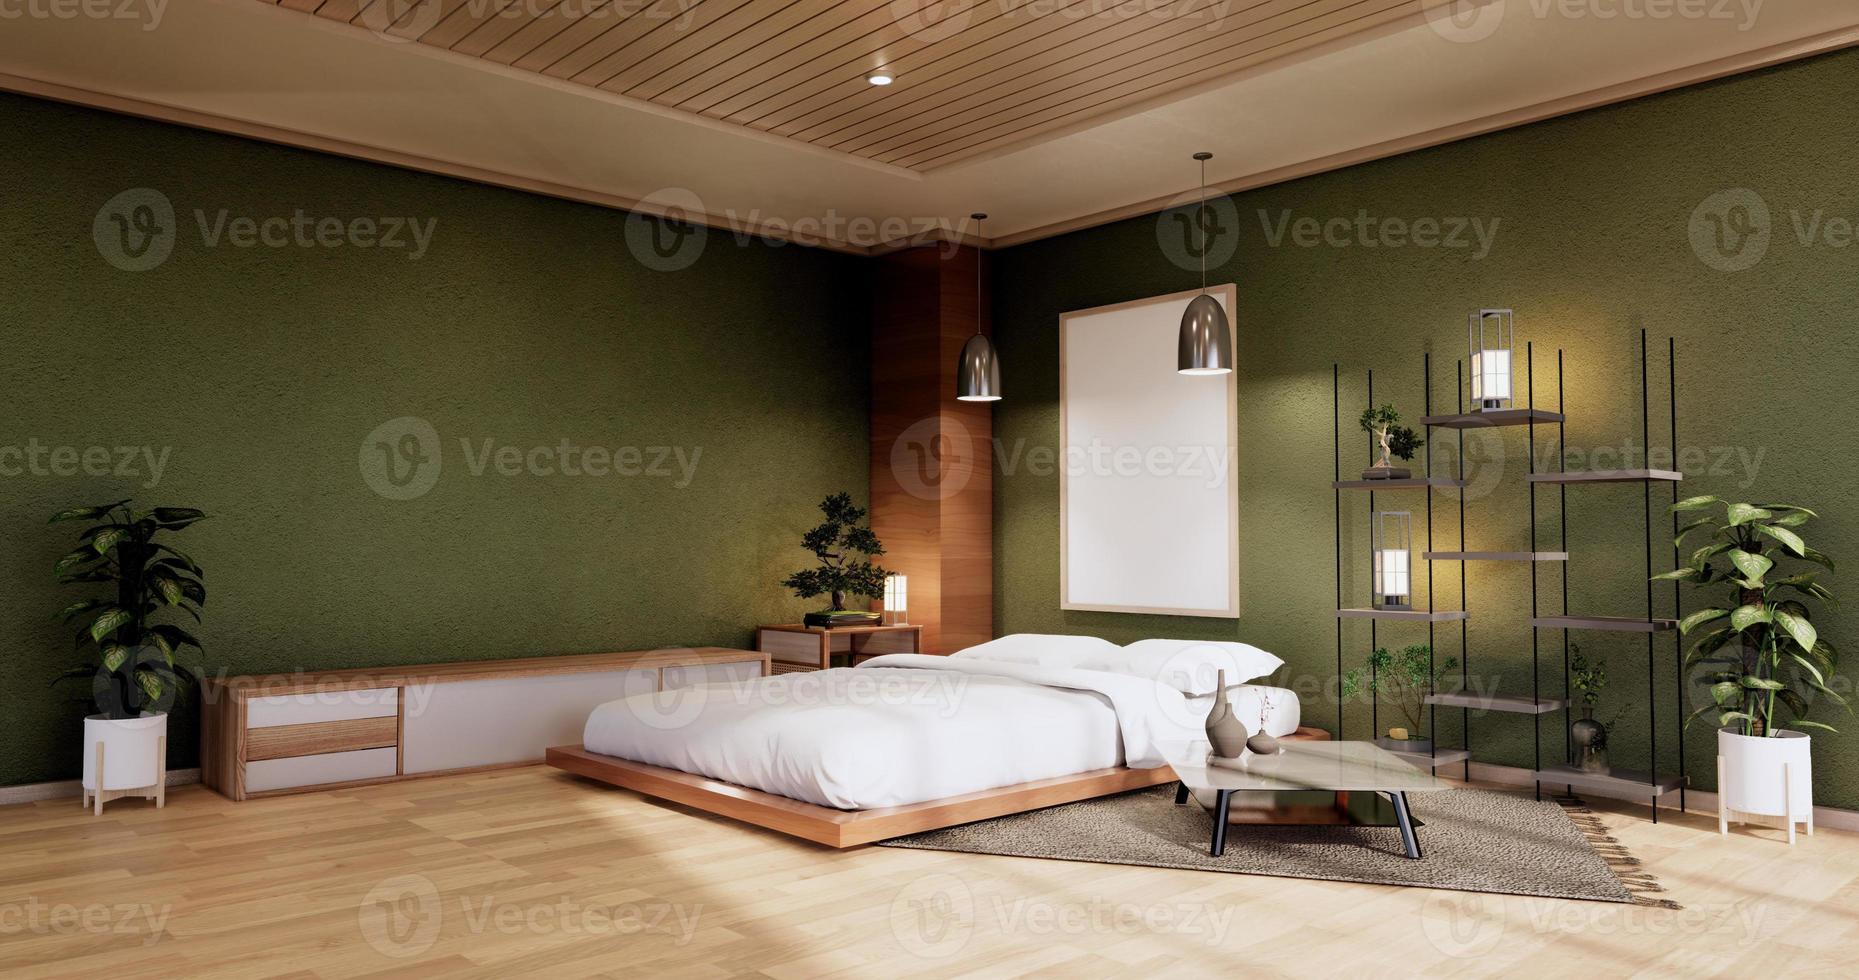 interiör mock up med zen säng växt och dekoration i japansk grön sovrum. 3d-rendering. foto